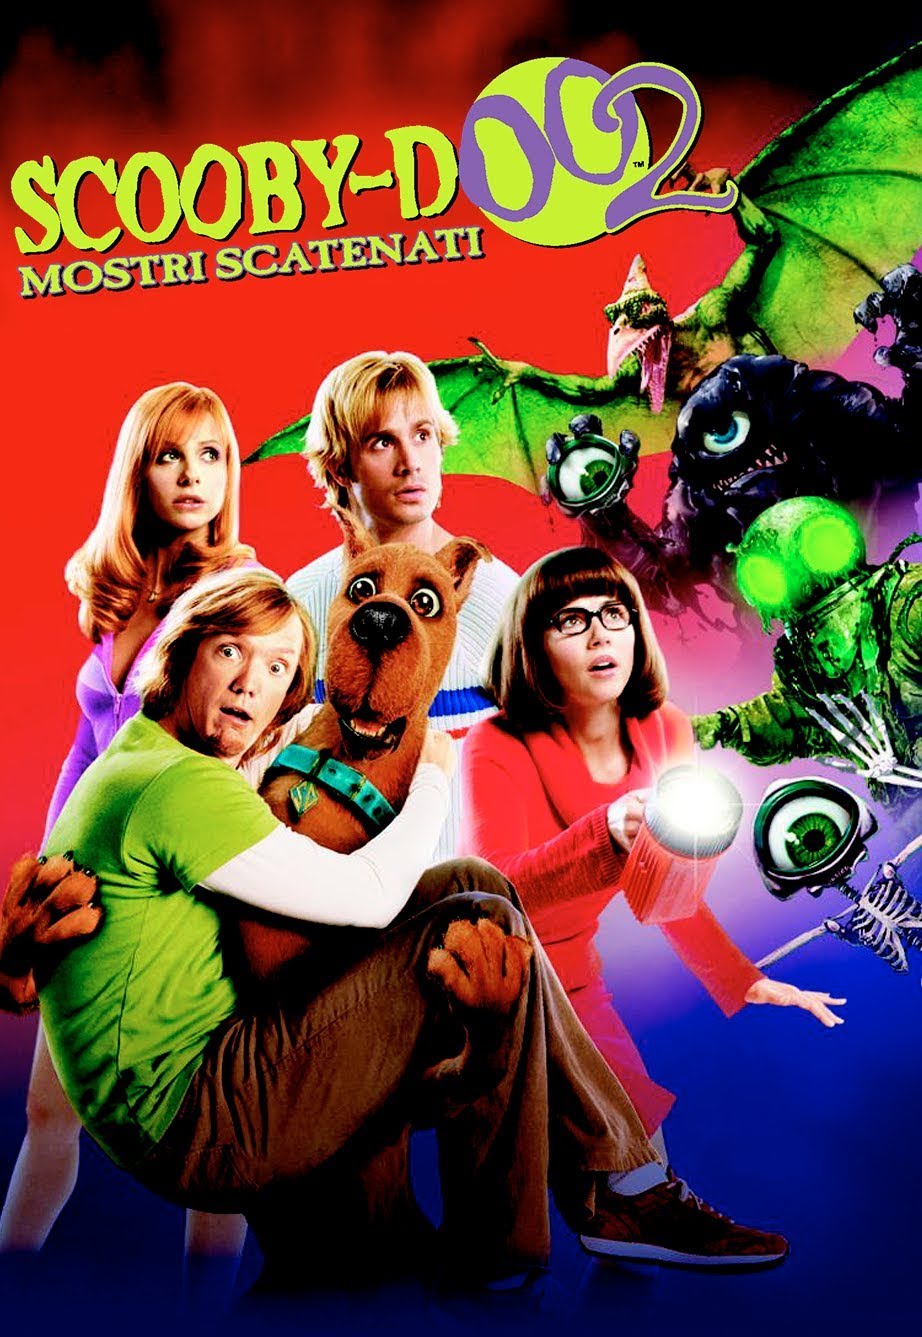 Scooby-Doo 2: Mostri scatenati [HD] (2004)